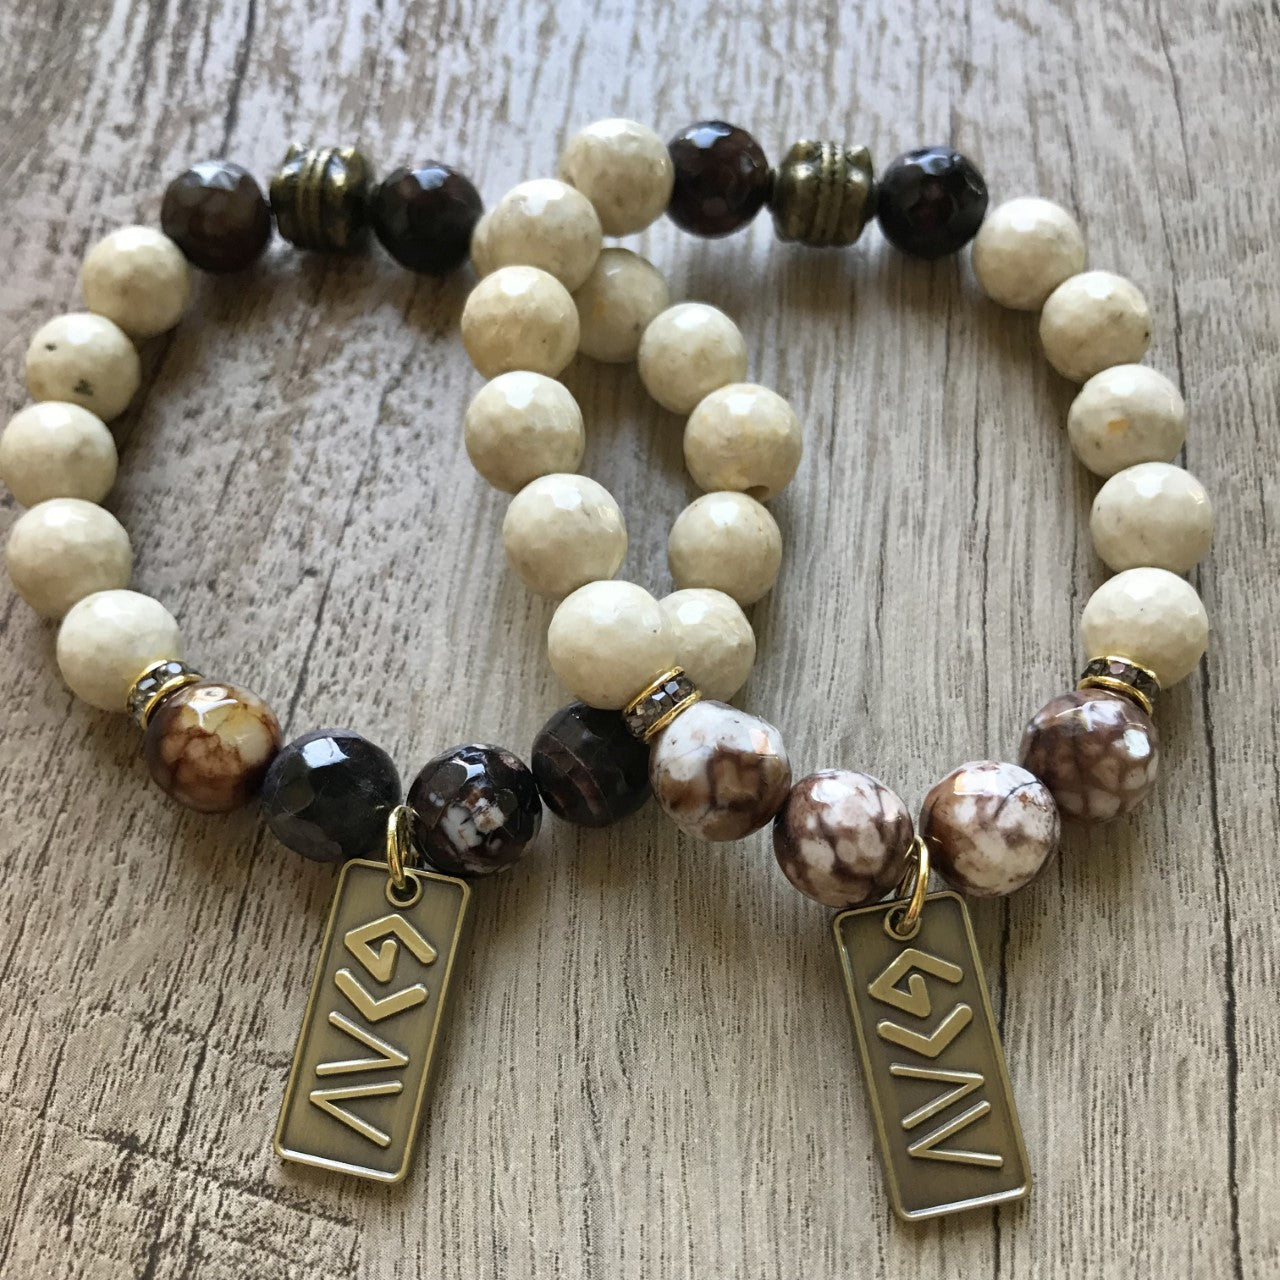 Men's Christian Bracelets | Christian bracelets, Christian jewelry, Boys  bracelets